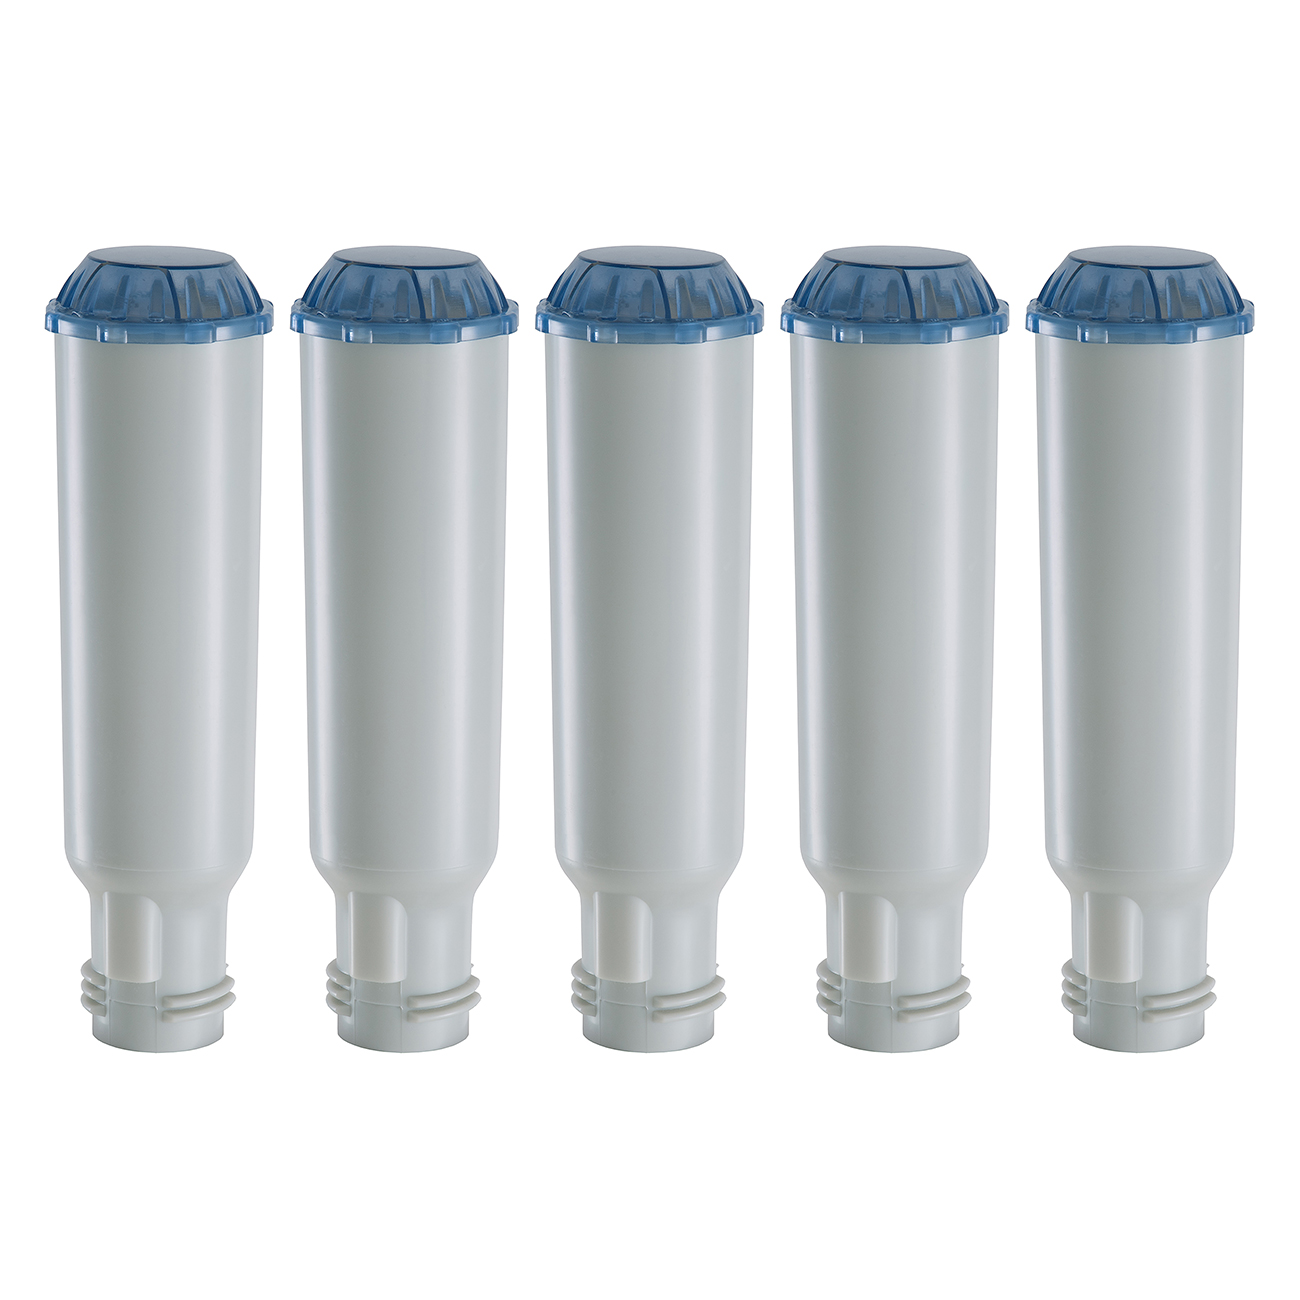 5 Stück schraubbare Wasserfilterpatronen Kartuschen geeignet für AEG, Siemens, Bosch Neff und Krups Kaffeevollautomaten 